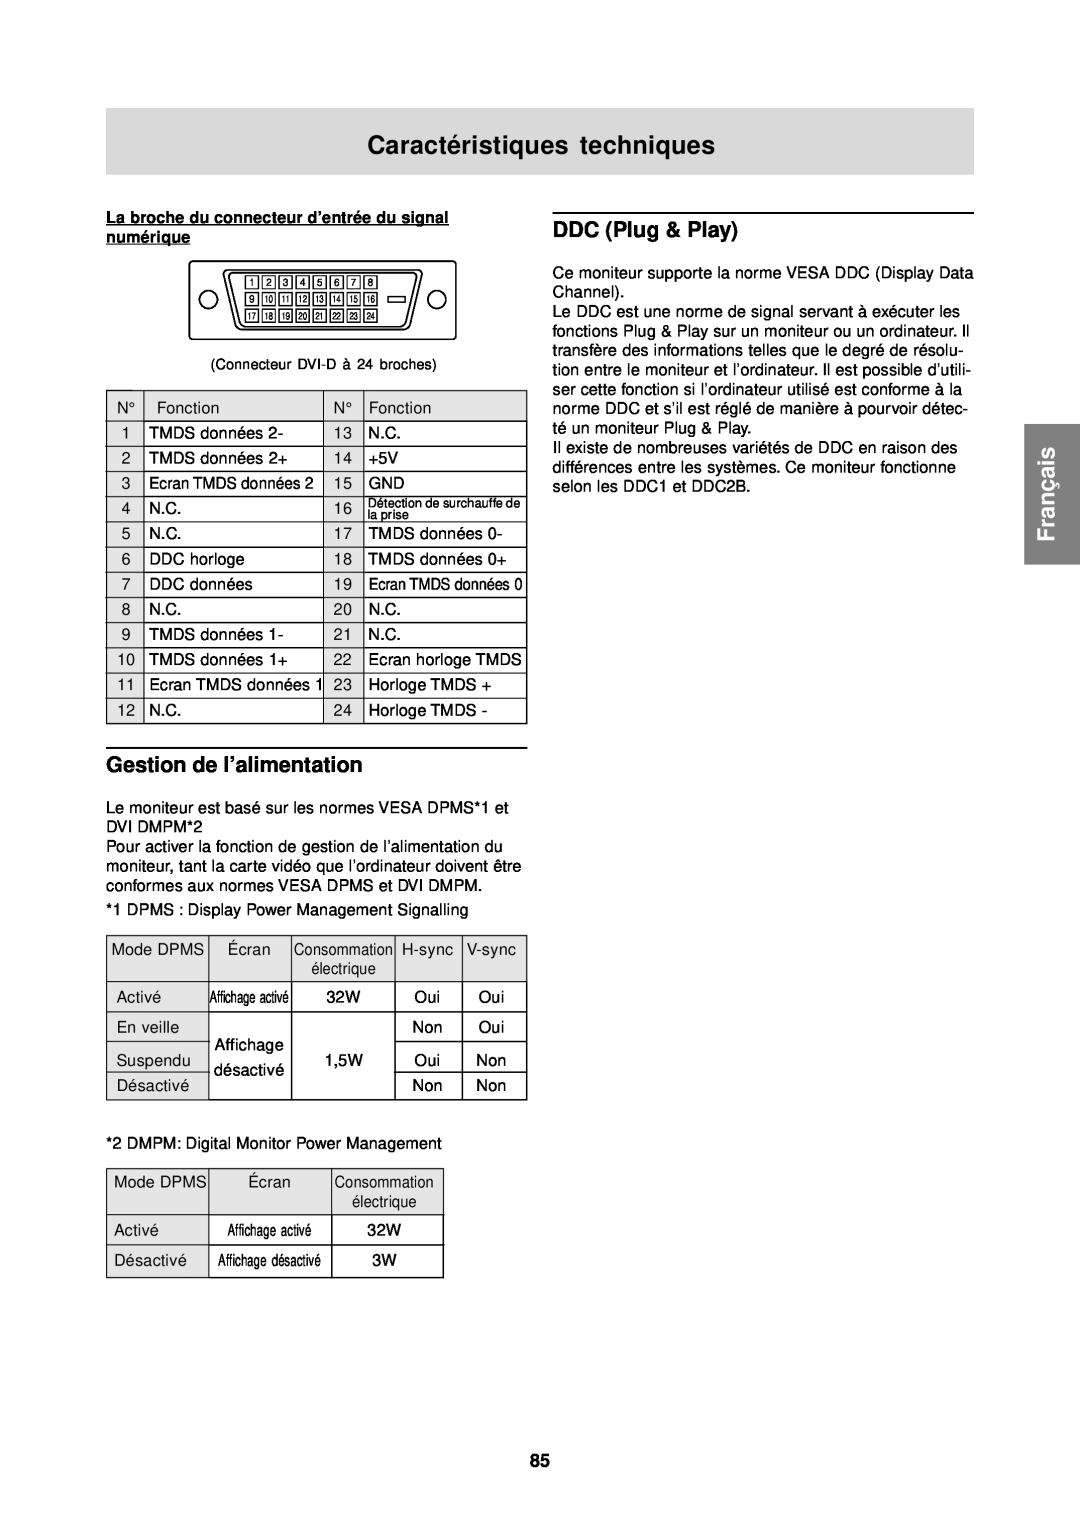 Sharp LL-T1610W operation manual Gestion de l’alimentation, Caractéristiques techniques, Français, DDC Plug & Play 